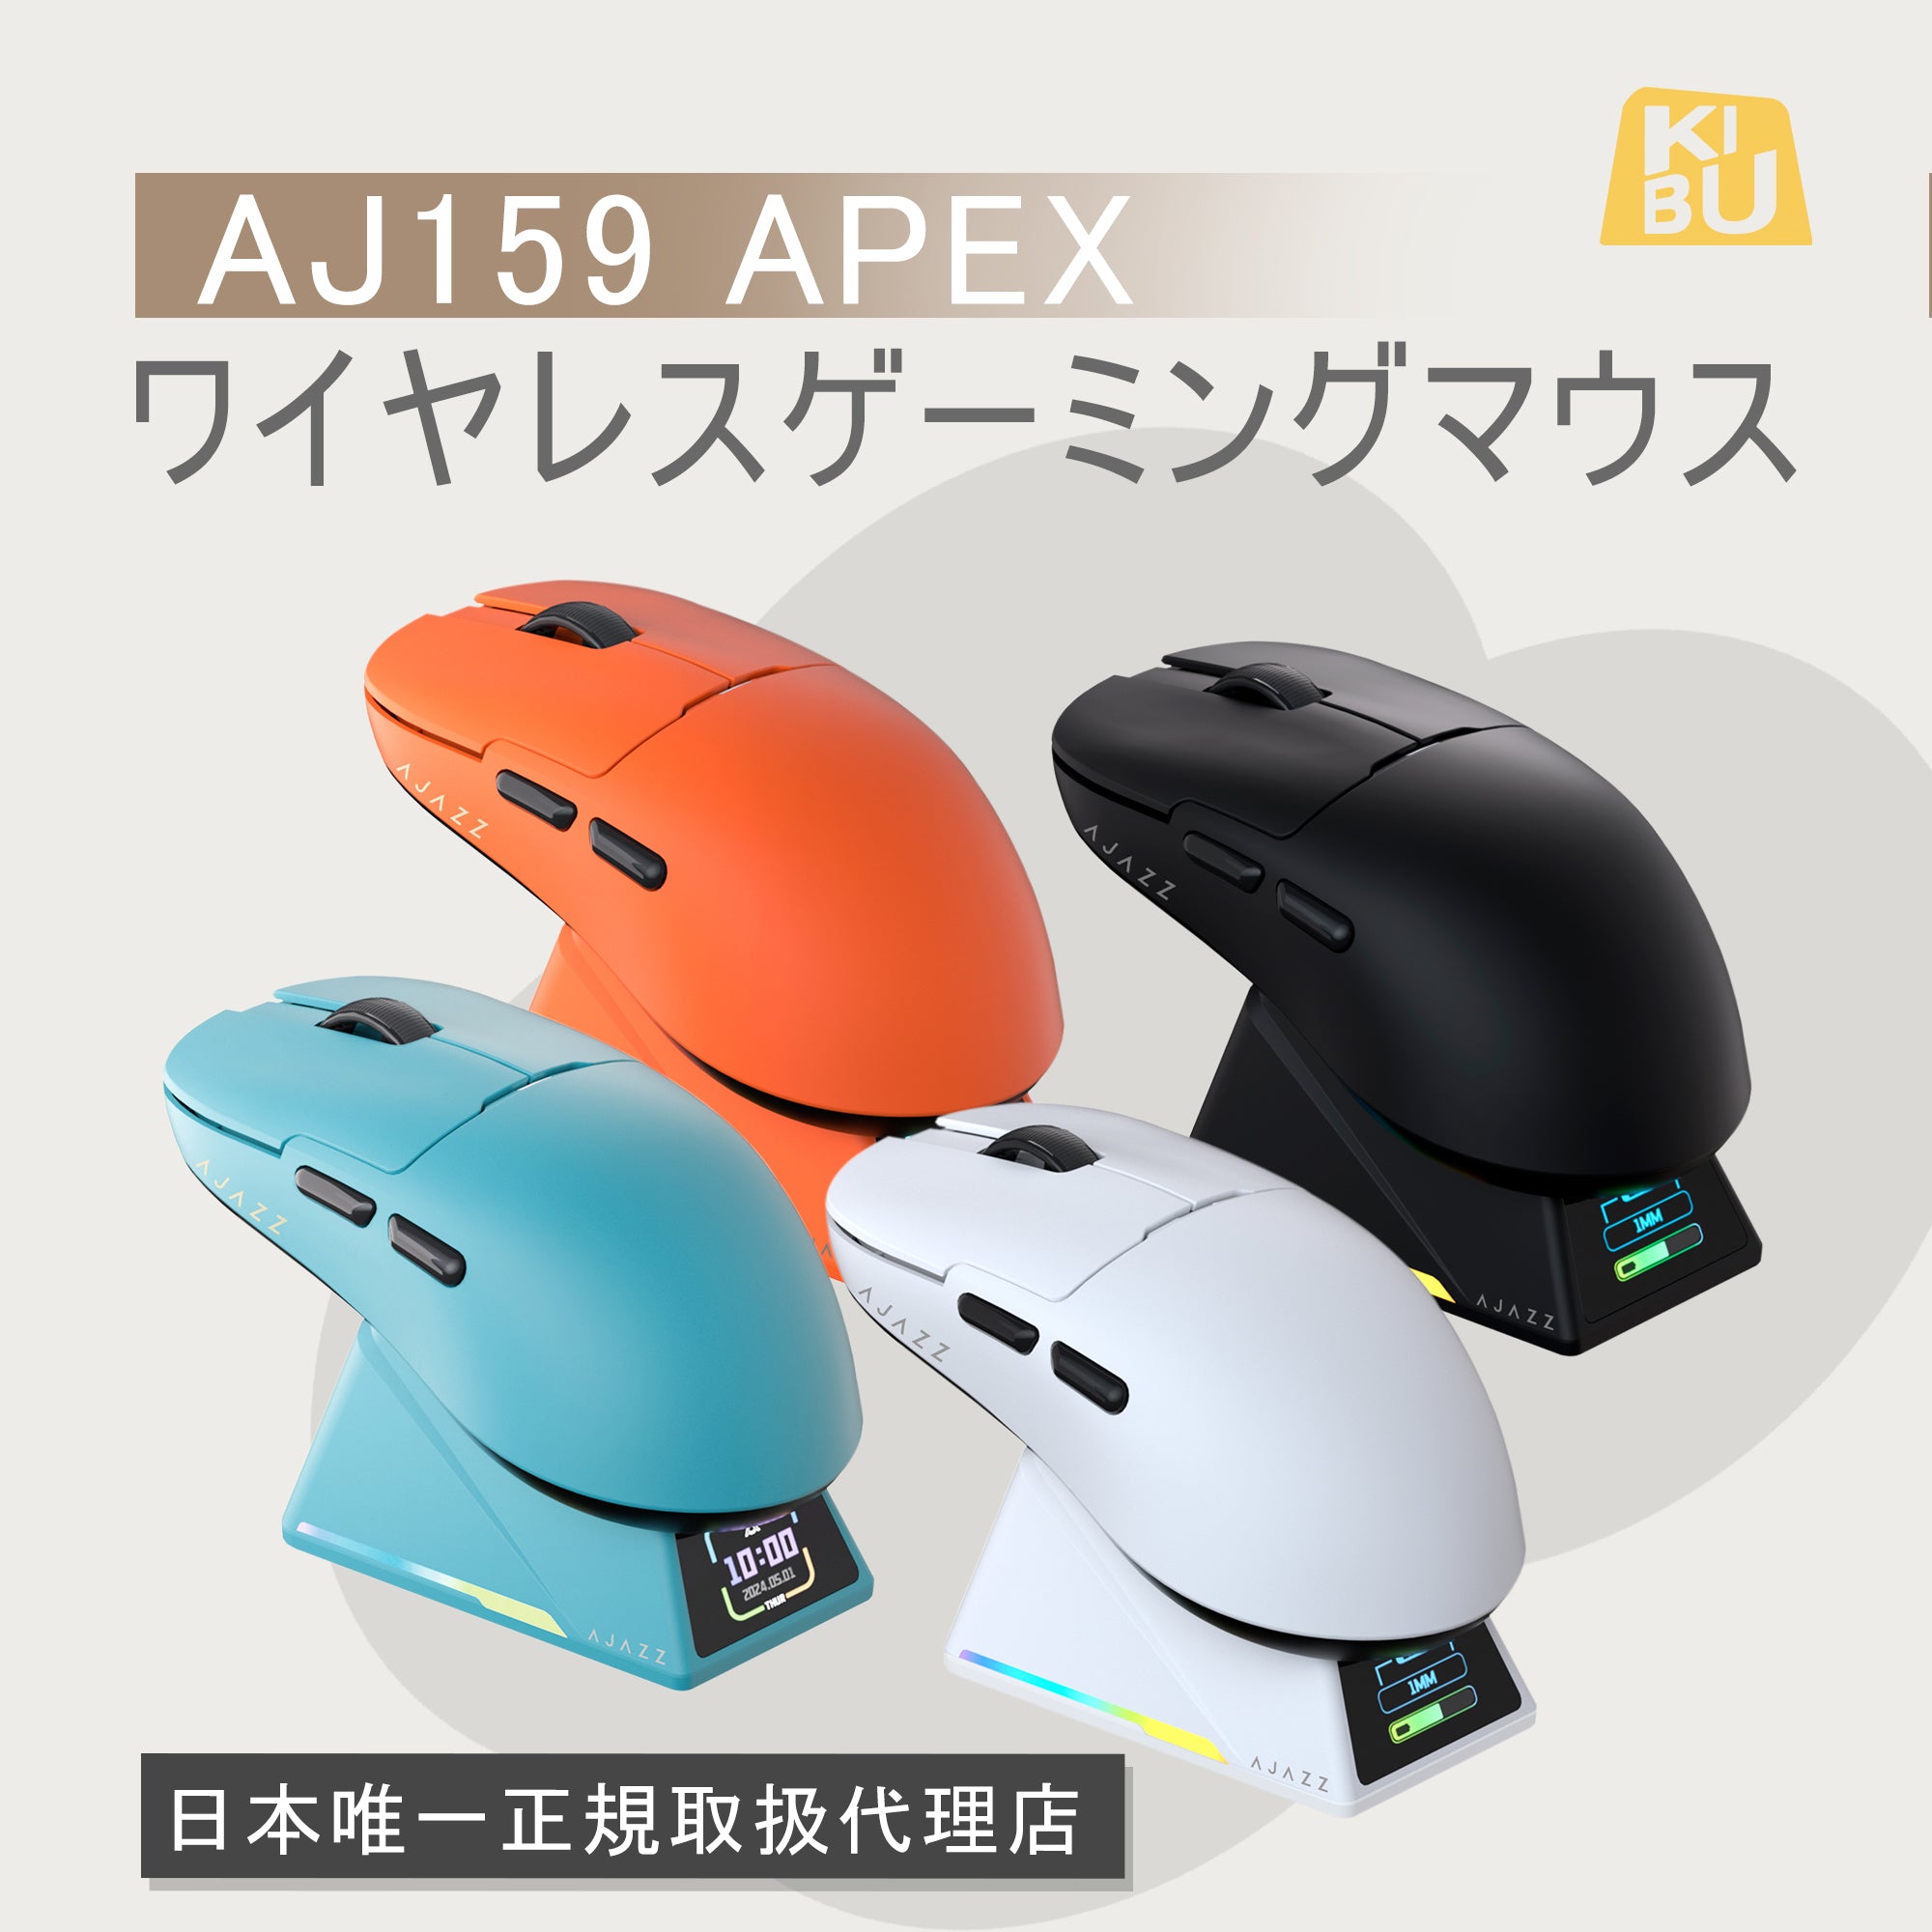 【在庫あり】AJAZZ AJ159 APEX ワイヤレスゲーミングマウス KIBU正規取扱製品